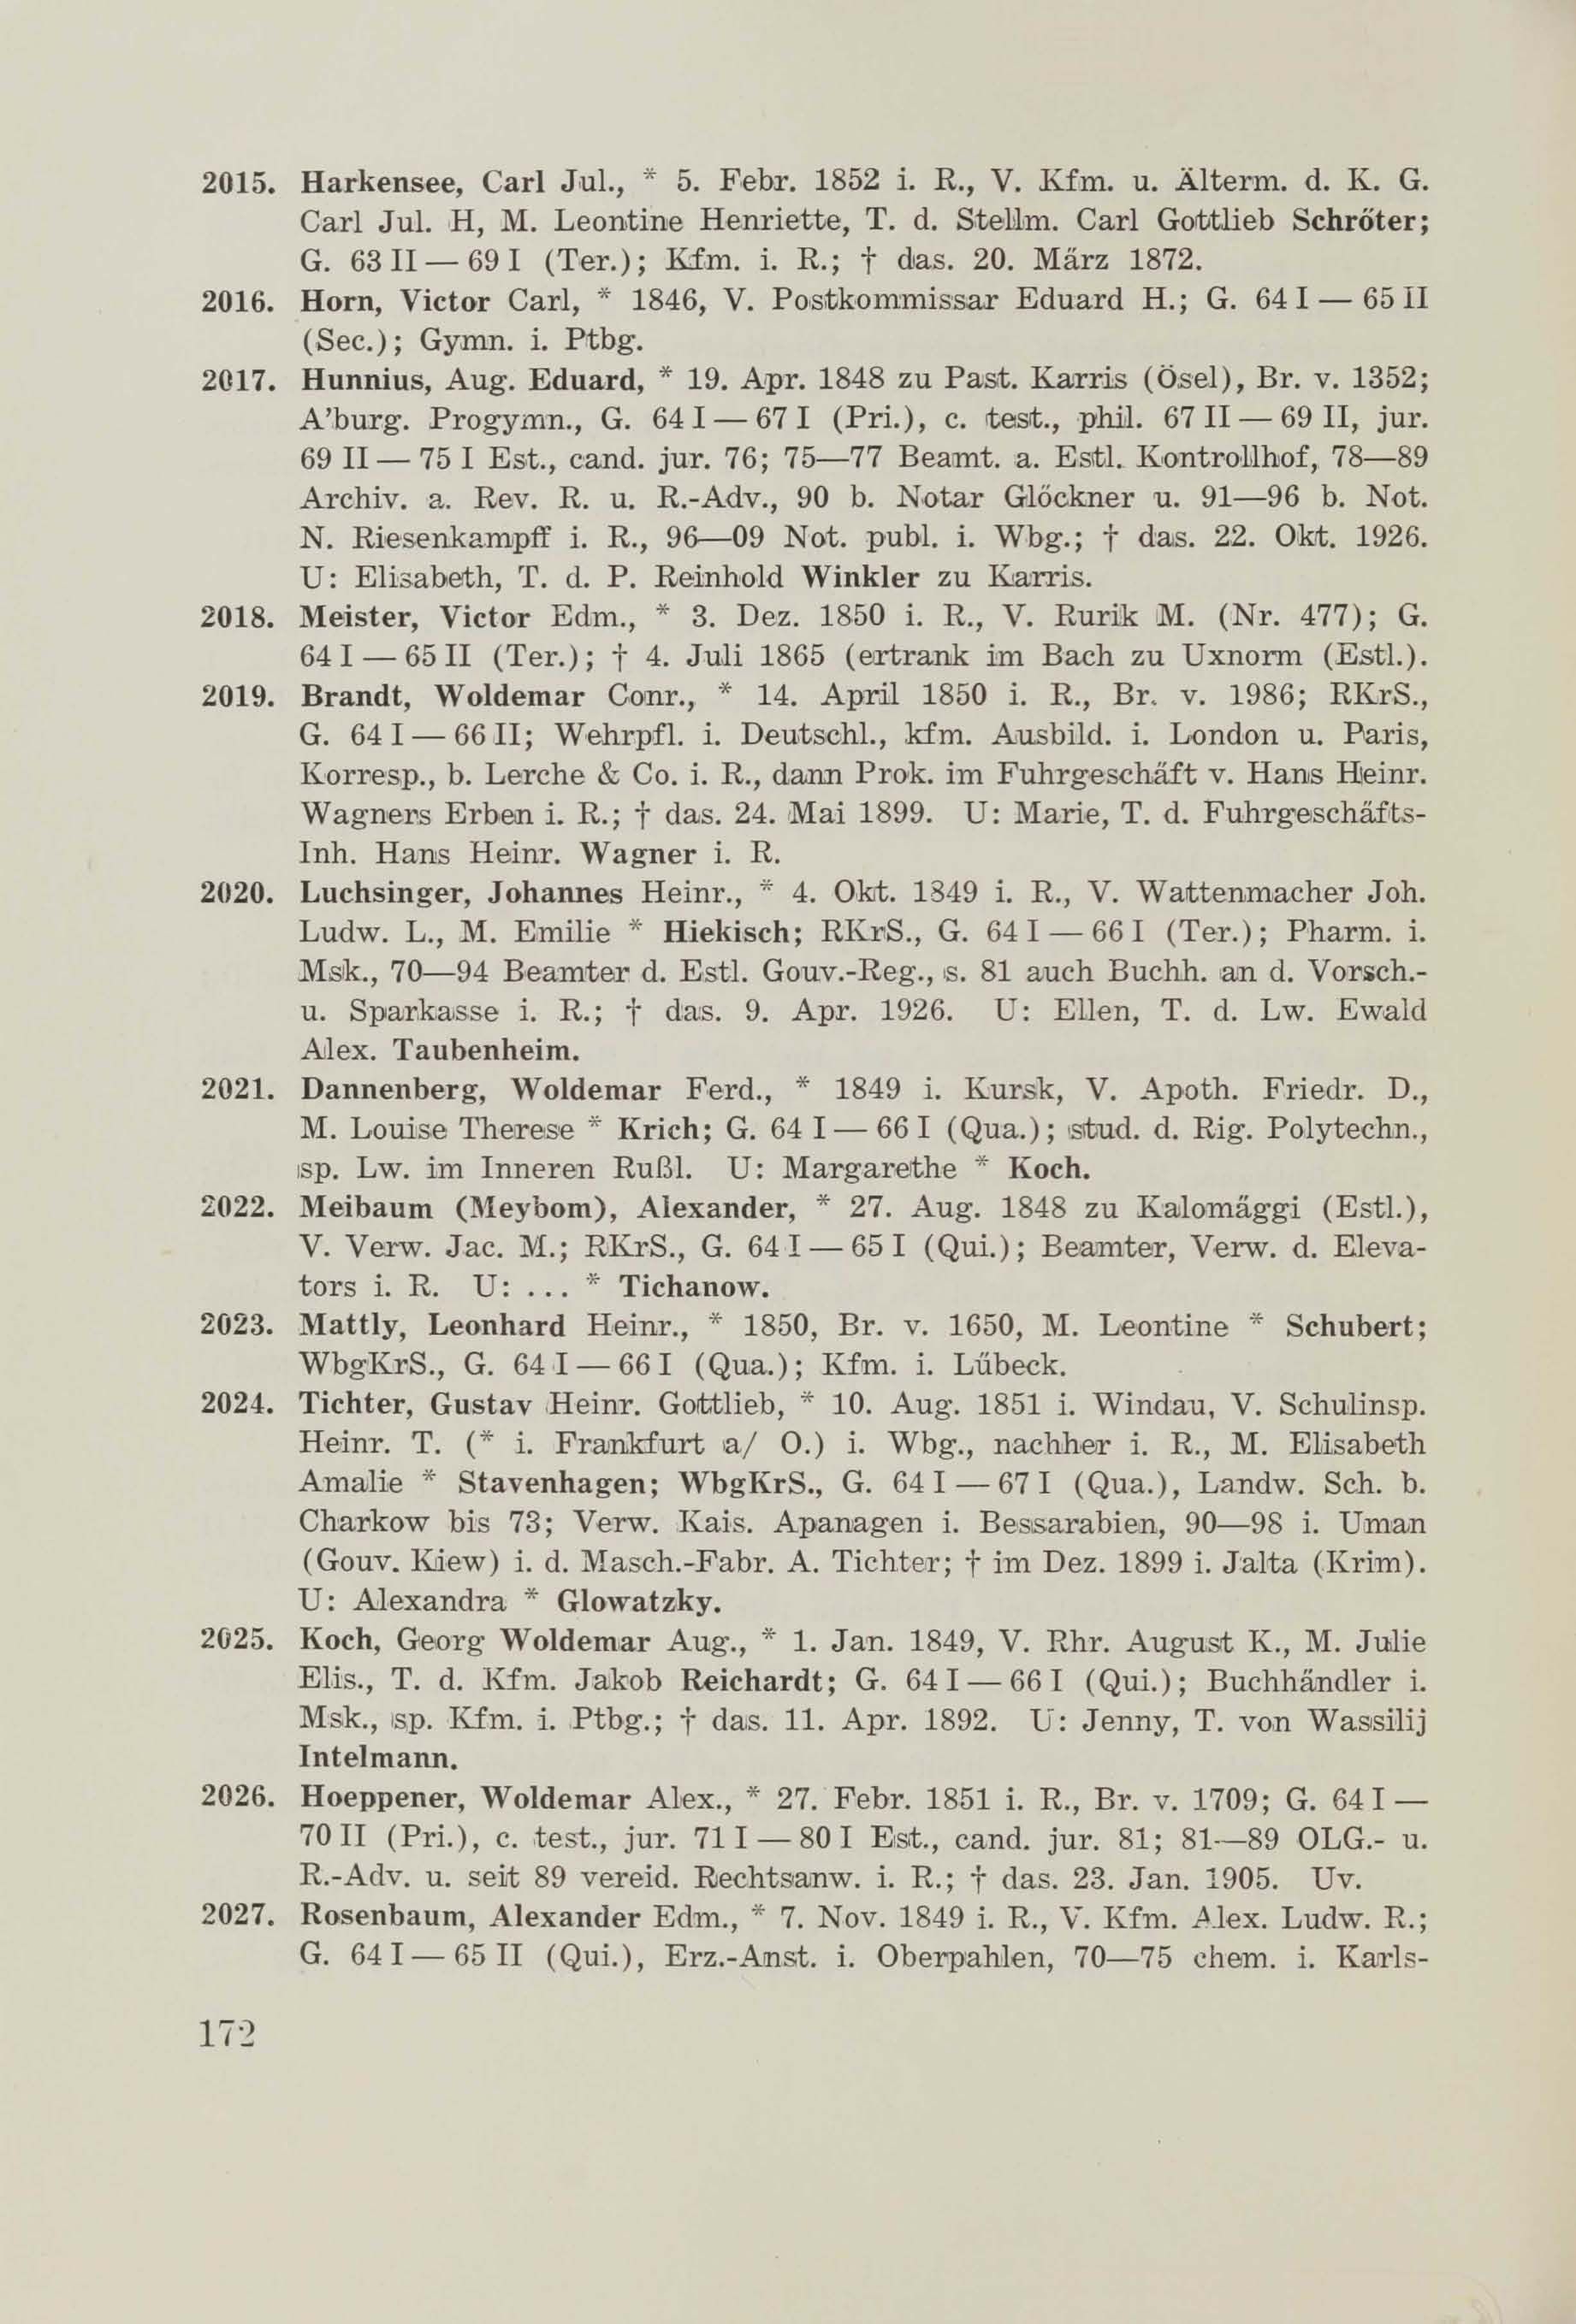 Schüler-Verzeichnis des Revalschen Gouvernements-Gymnasiums 1805–1890 (1931) | 182. (172) Main body of text